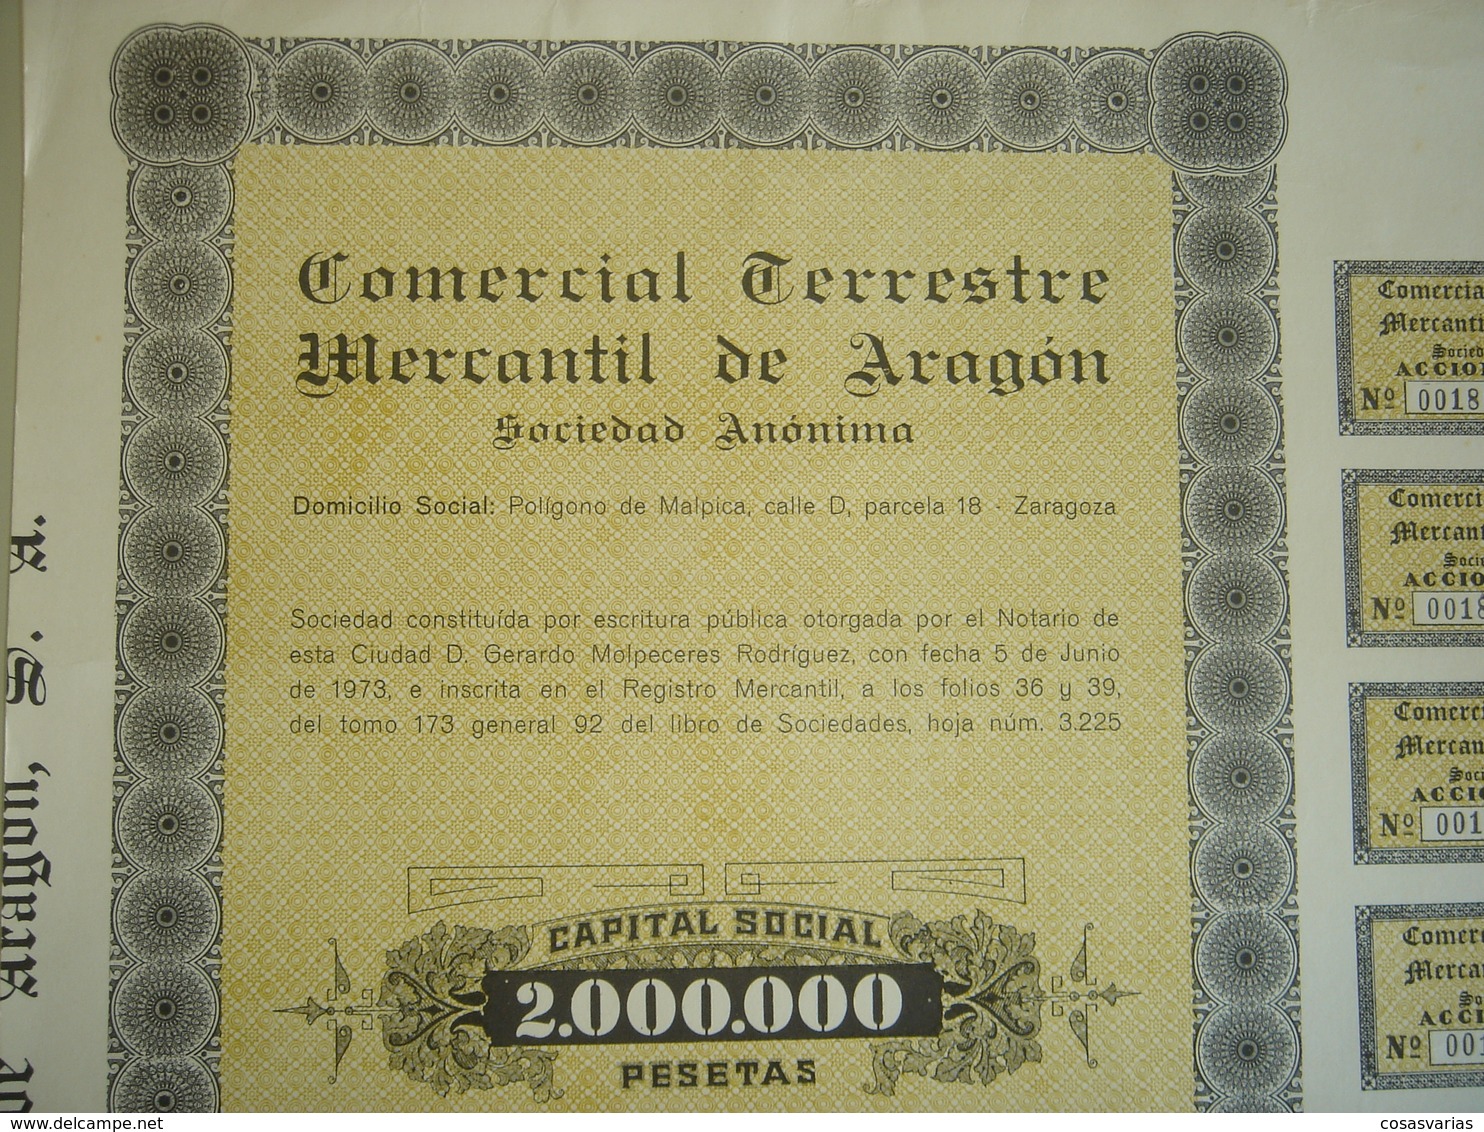 COMERCIAL TERRESTRE MERCANTIL ARAGÓN - Acción 1000 Pesetas - Zaragoza, 5 Junio 1974 - OriginalACTION AKTION - Transportmiddelen